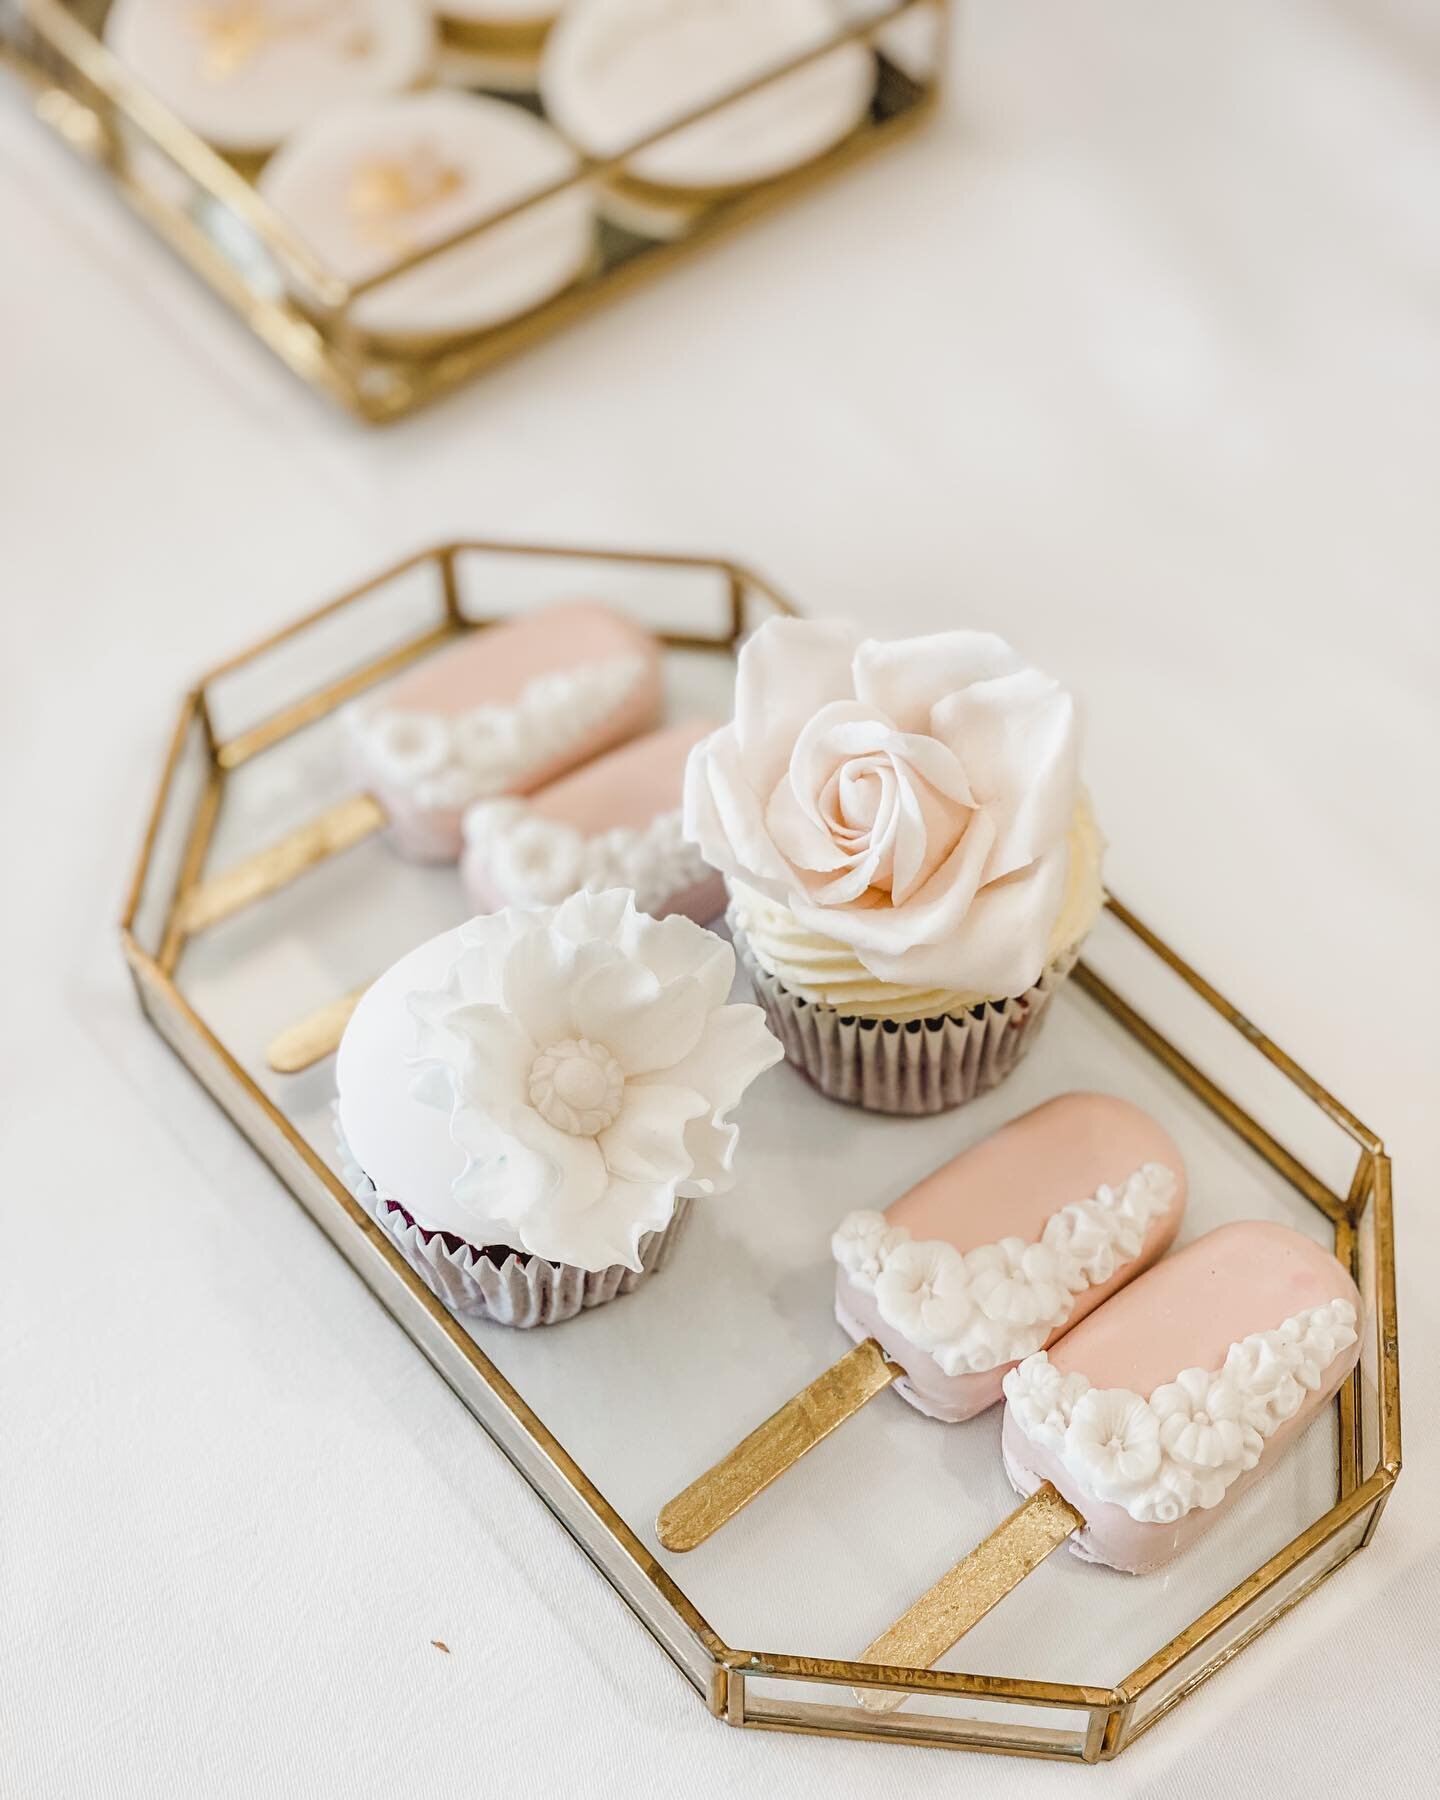 Cupcakes and cakesicles @whatleymanor #dessertable #cupcakes #cakesicles 
#sugarflowers #weddingcake #sugarorchid #cake 
#weddingcake #cakeideas #devon #cornwall #edibleessence #stylishweddings #luxuryfinecakes #luxury #wedluxe #luxurywedding #engage